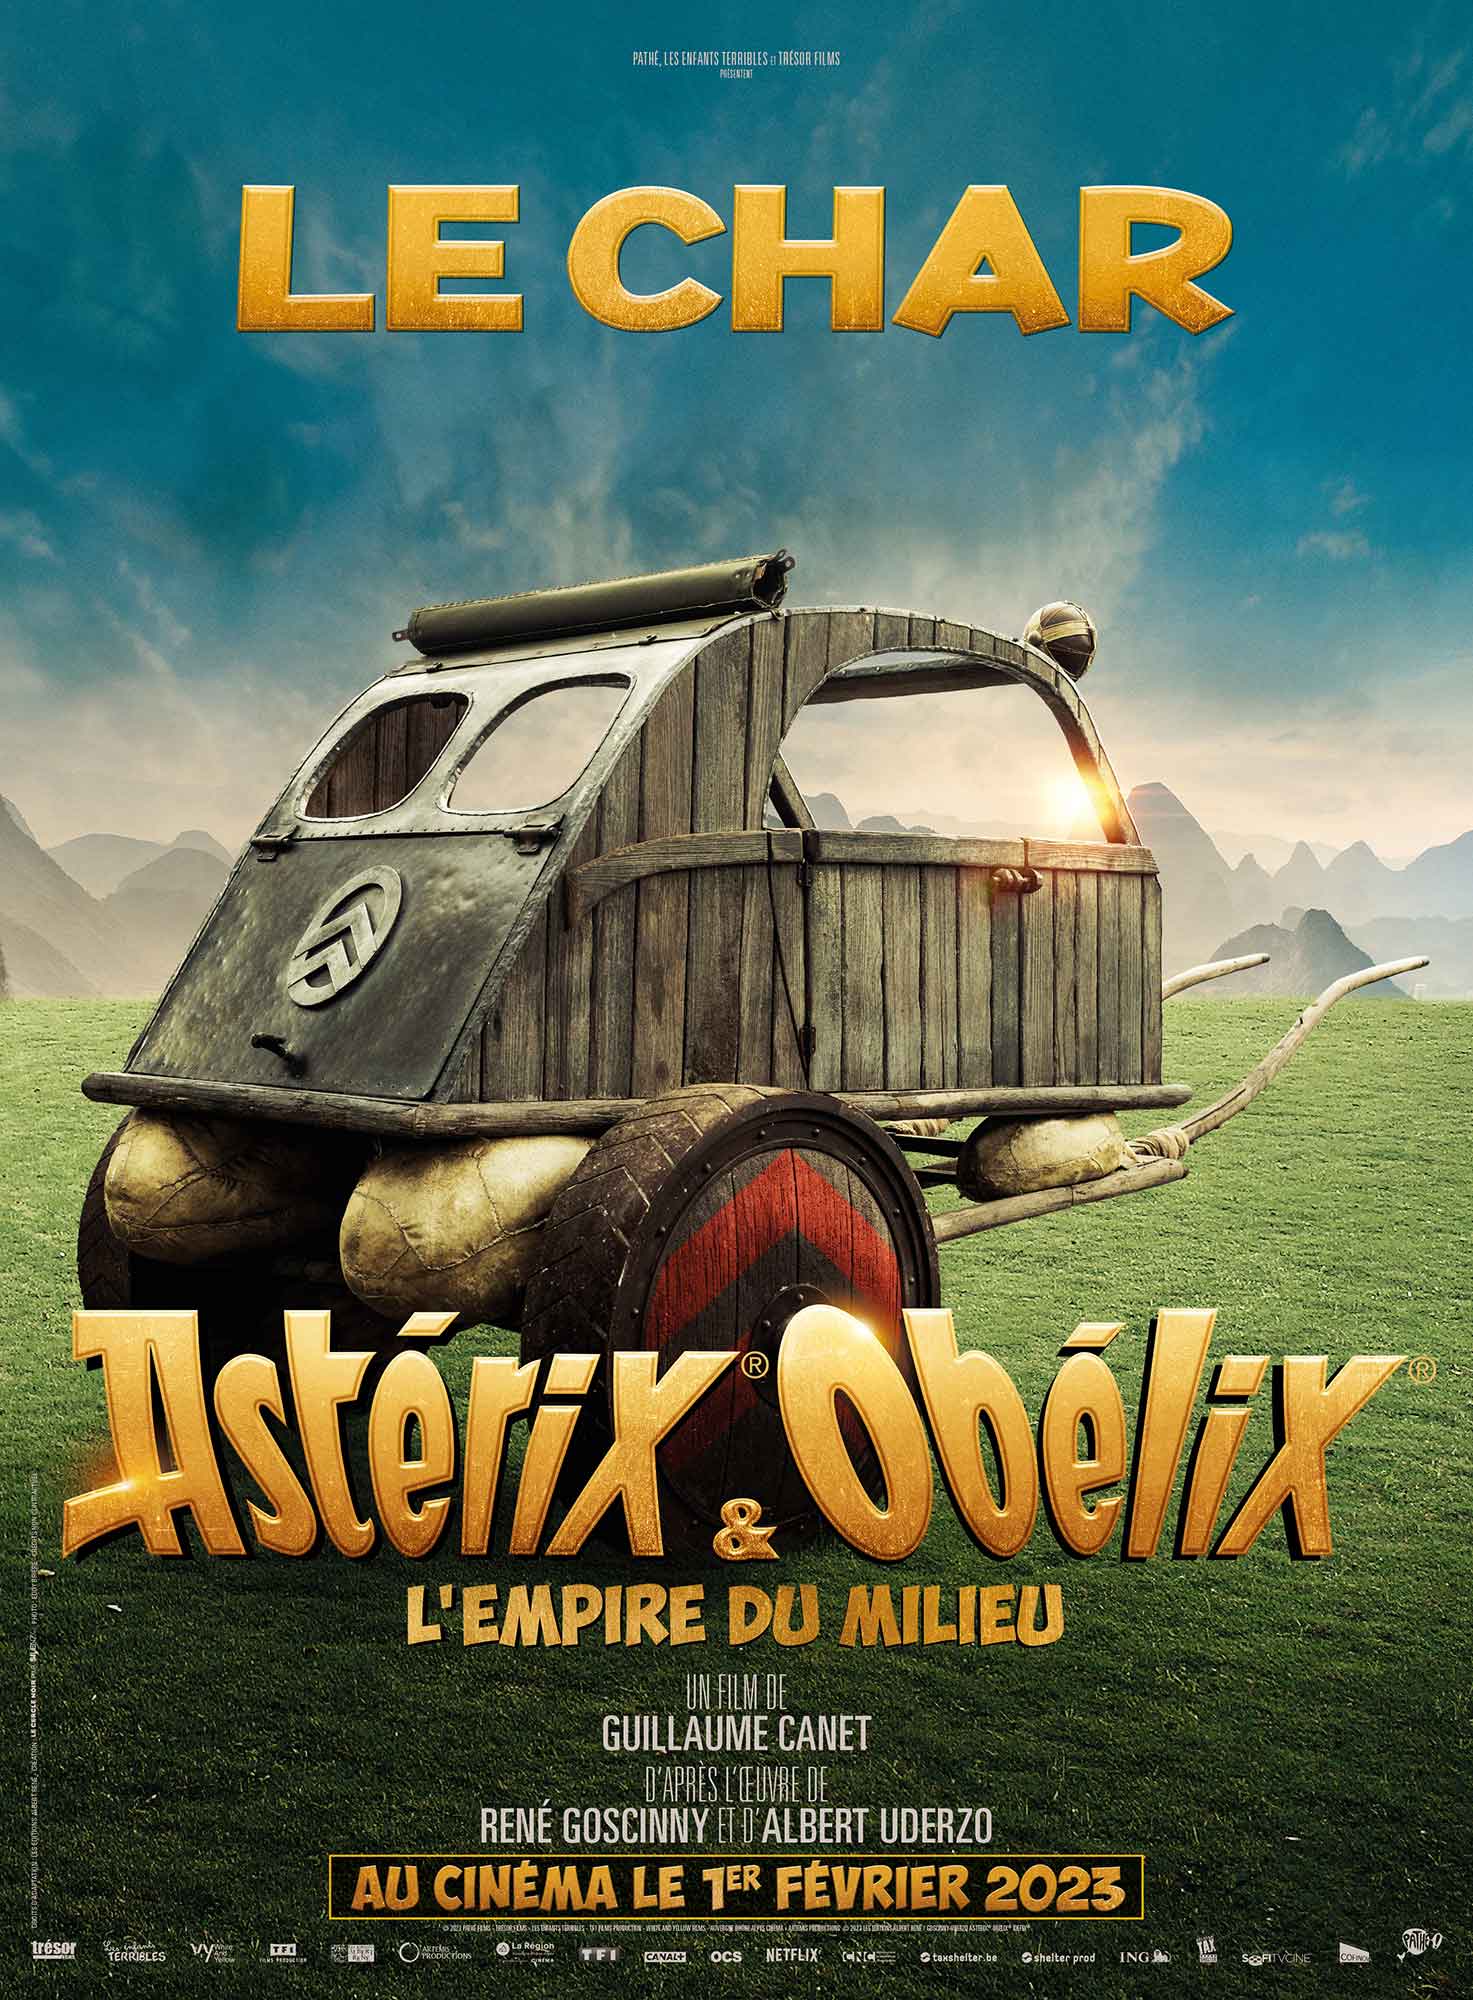 Asterix & Obelix: Das Reiche der Mitte